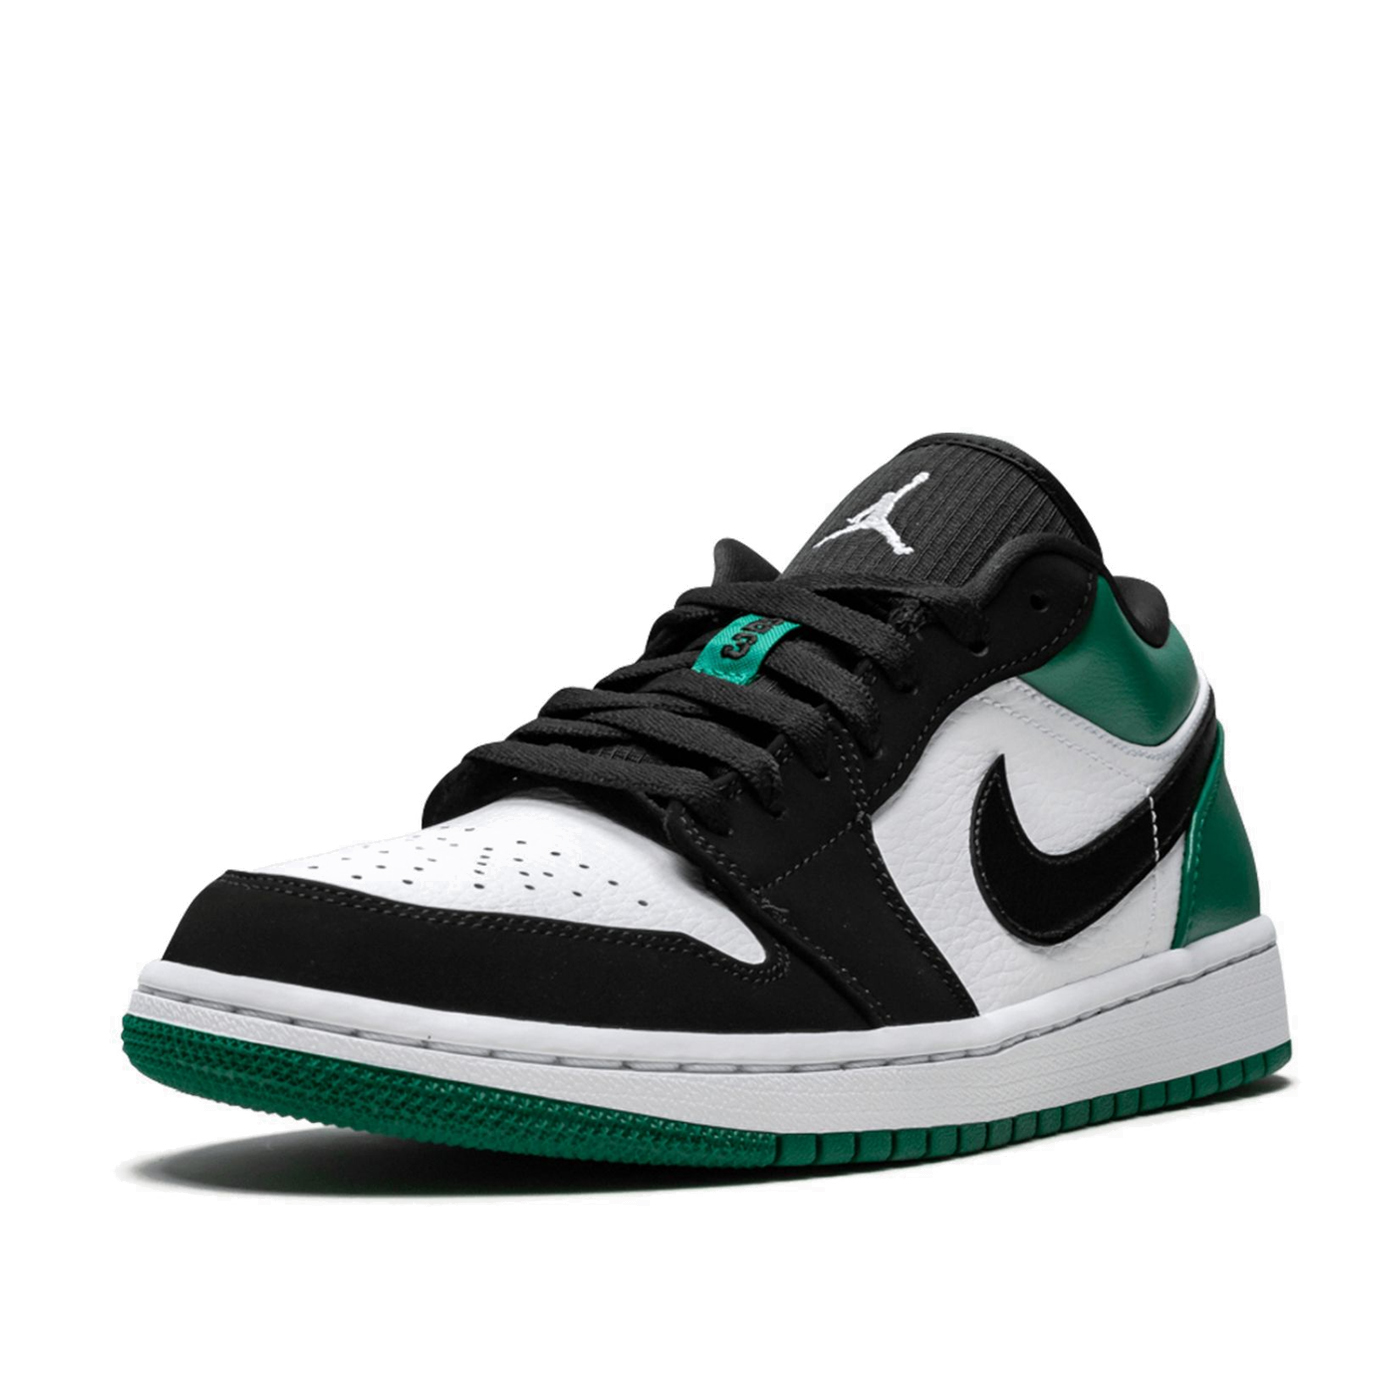 Найк 1 лоу. Nike Air Jordan 1 Low Mystic Green. Nike Air Jordan 1 Low Black White. Nike Air Jordan 1 Low Green. Nike Air Jordan 1 Low White.